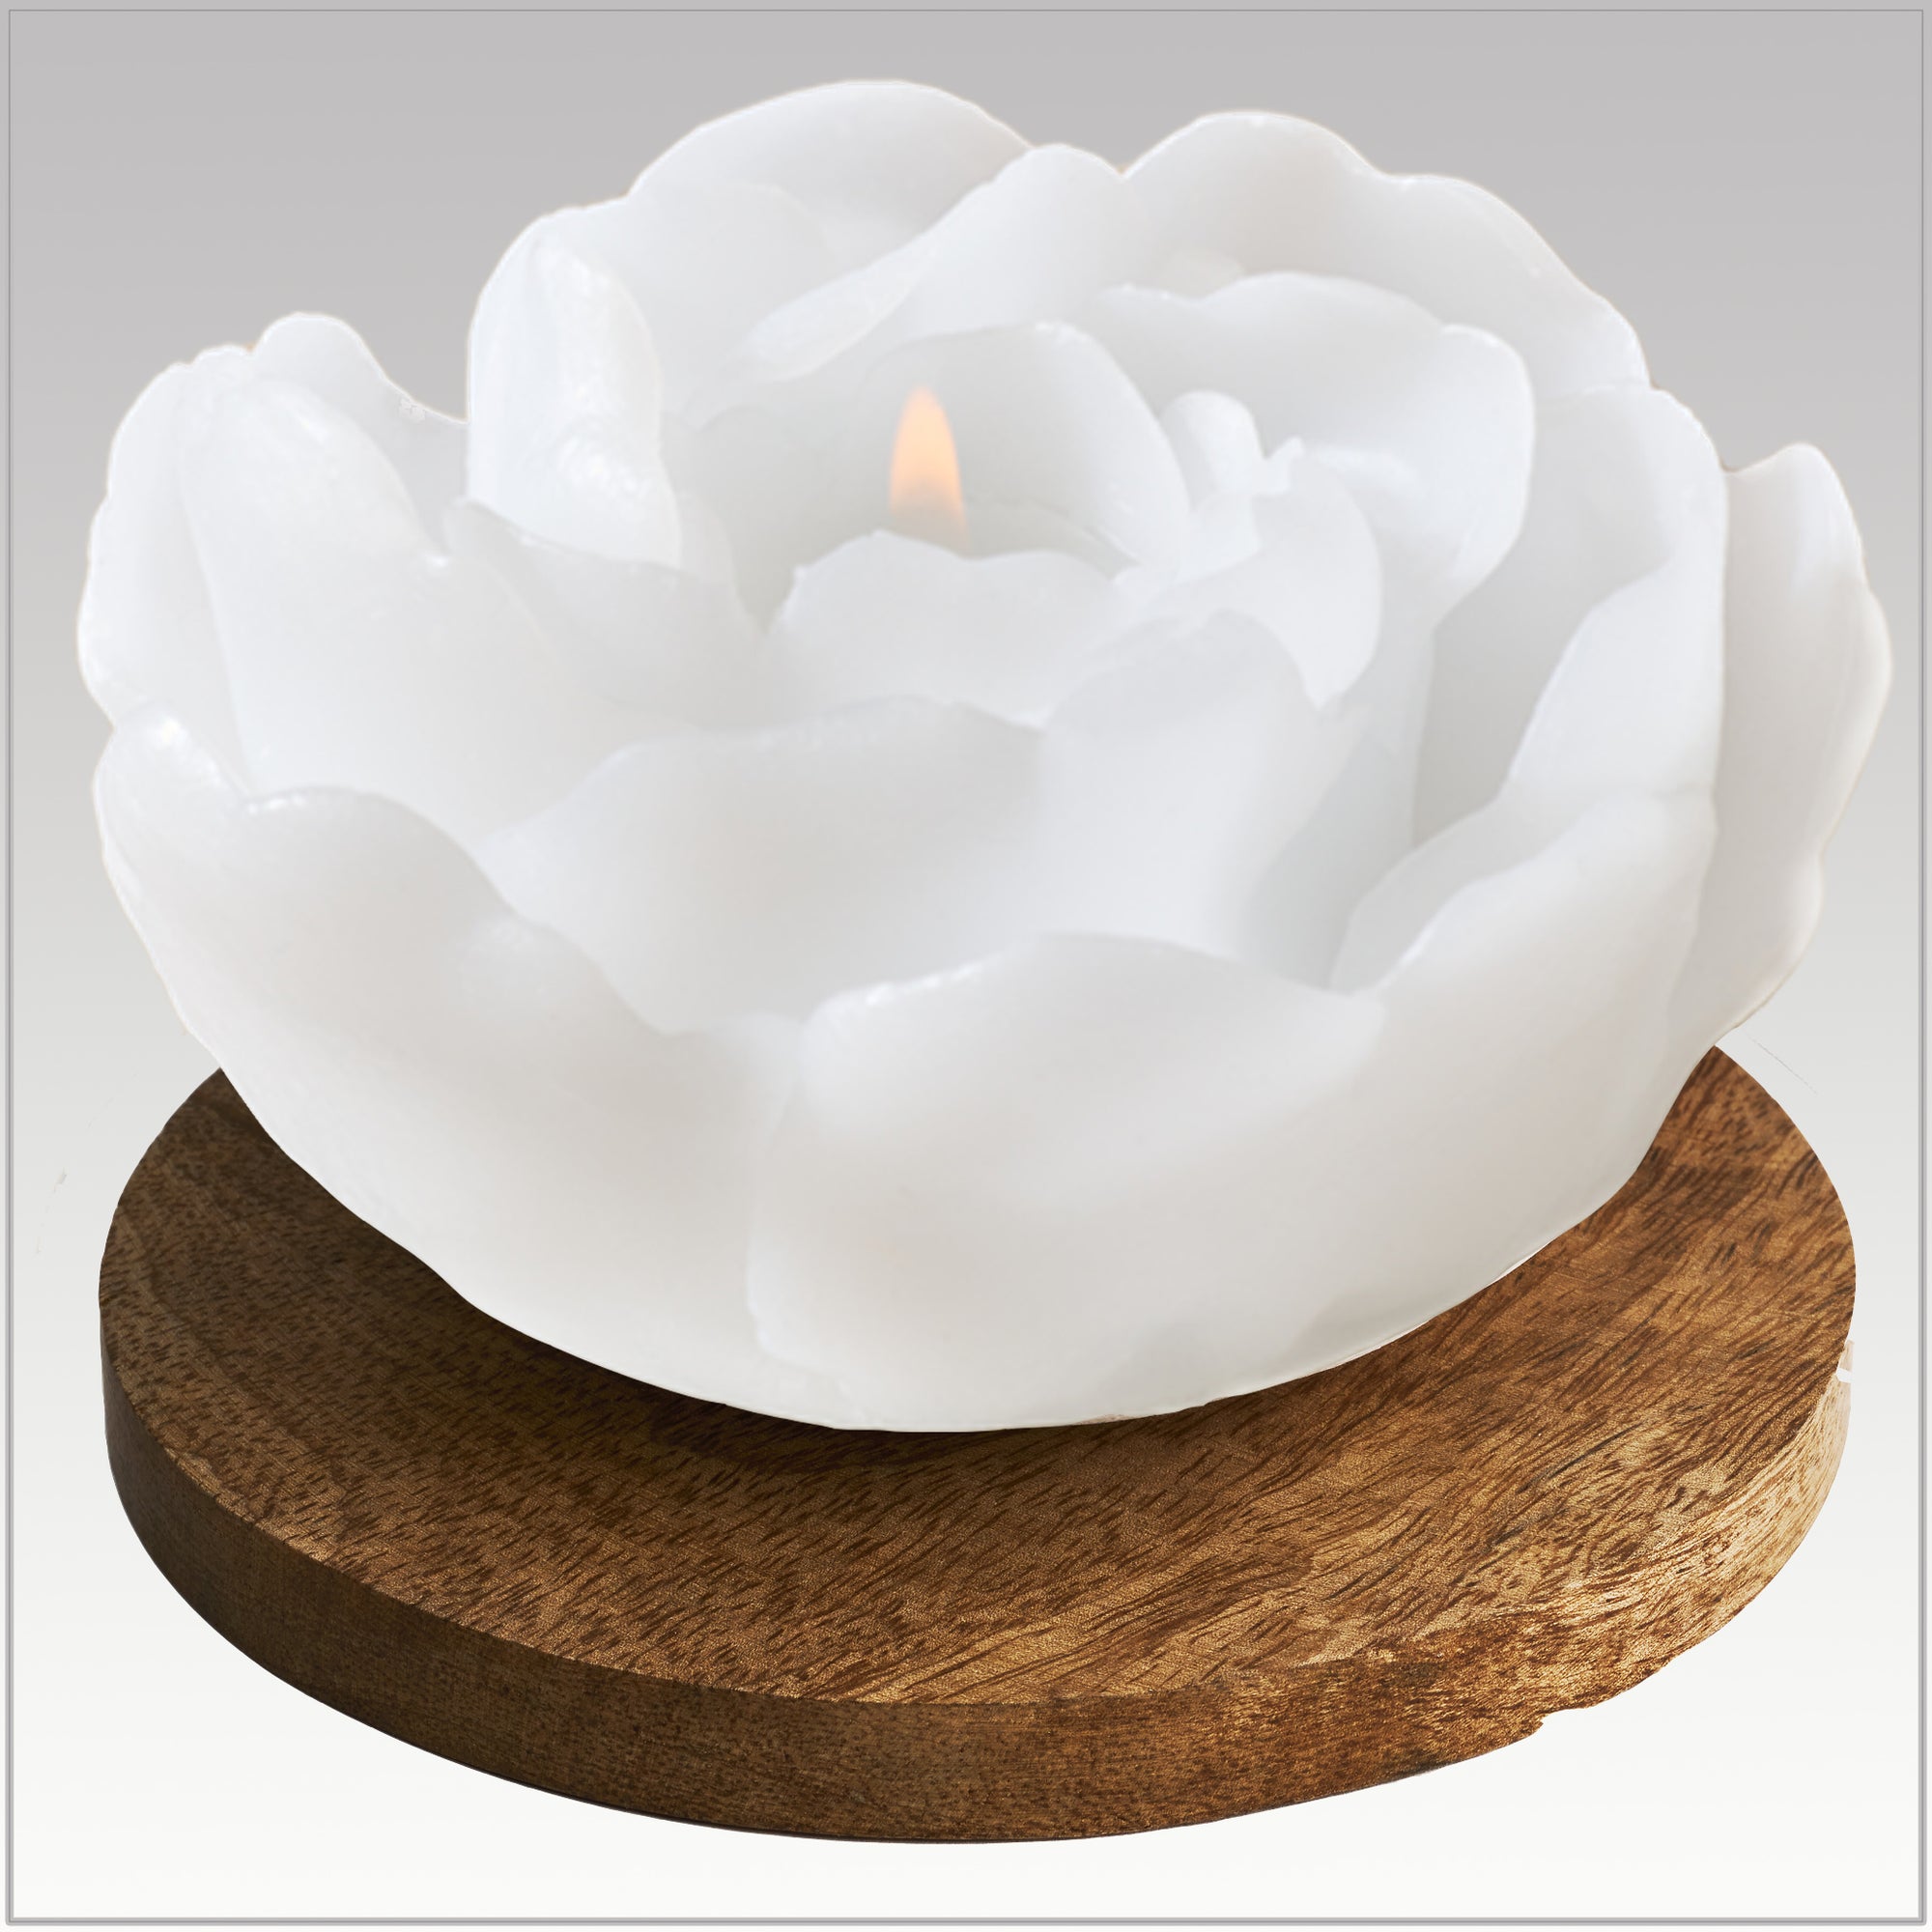 Fliorus white candle with mango wood coaster 2